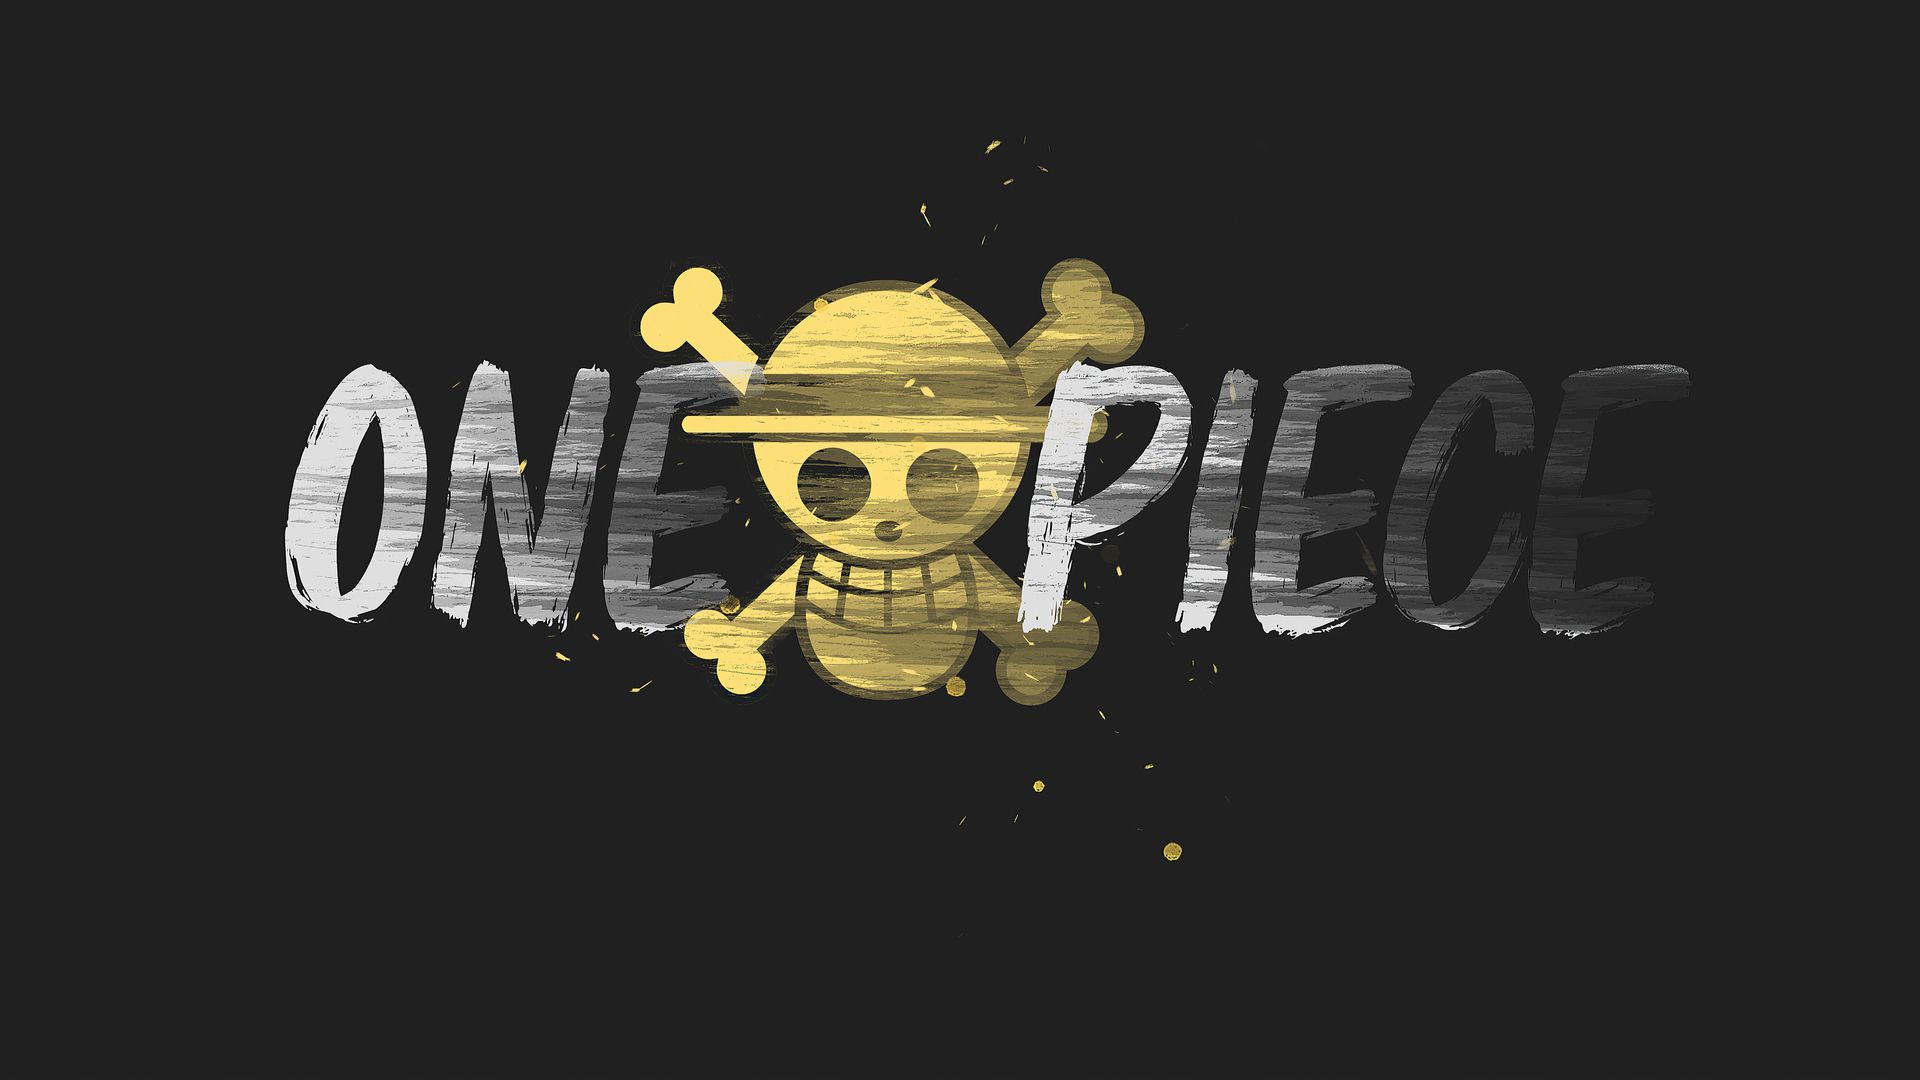 One Piece là một bộ truyện tranh nổi tiếng và được yêu thích trong giới trẻ. Nếu bạn yêu thích bộ truyện này, hãy ghé thăm đây để tìm kiếm những hình nền One Piece đẹp nhất để trang trí cho chiếc điện thoại hoặc máy tính của bạn.